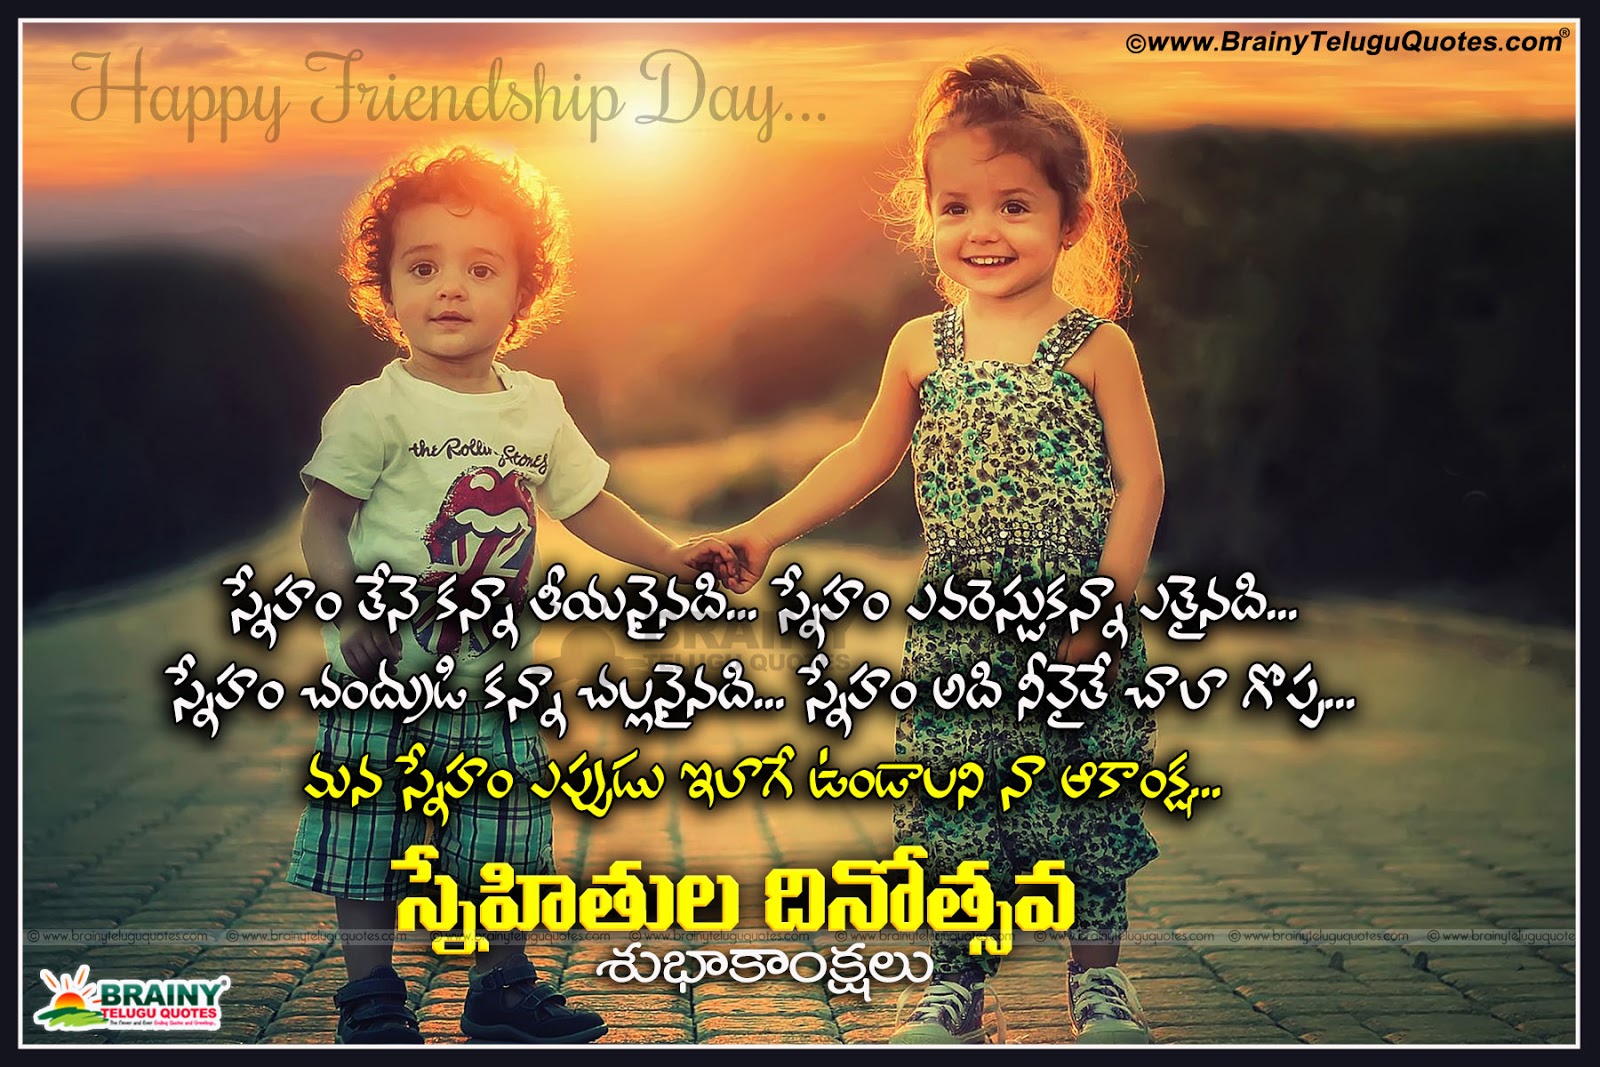 Friendship Day Quotes in Telugu | BrainyTeluguQuotes.comTelugu quotes